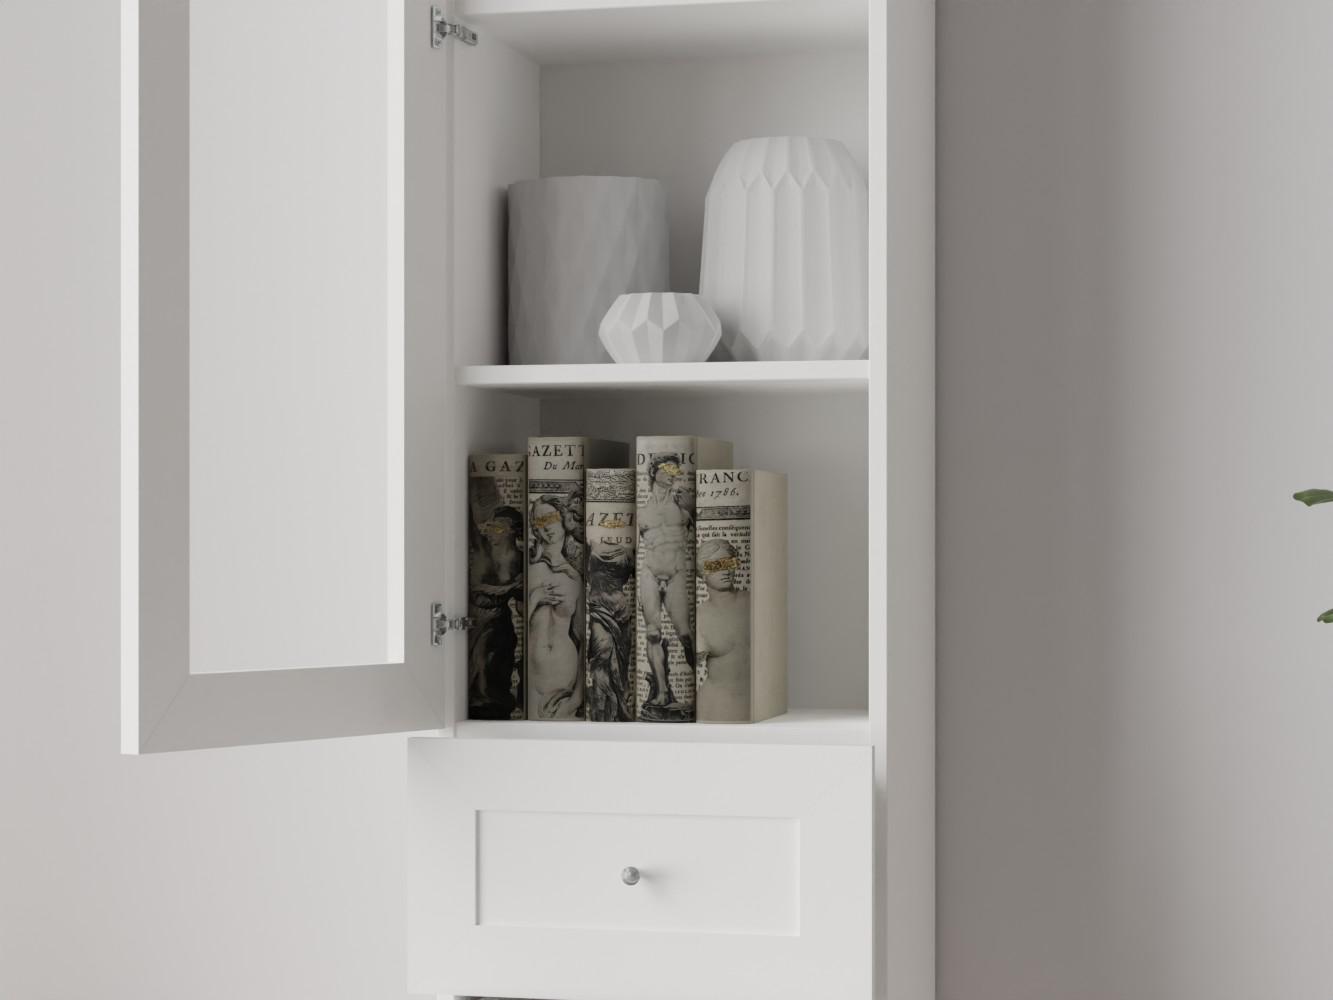 Изображение товара Книжный шкаф Билли 375 white ИКЕА (IKEA), 40x30x202 см на сайте adeta.ru